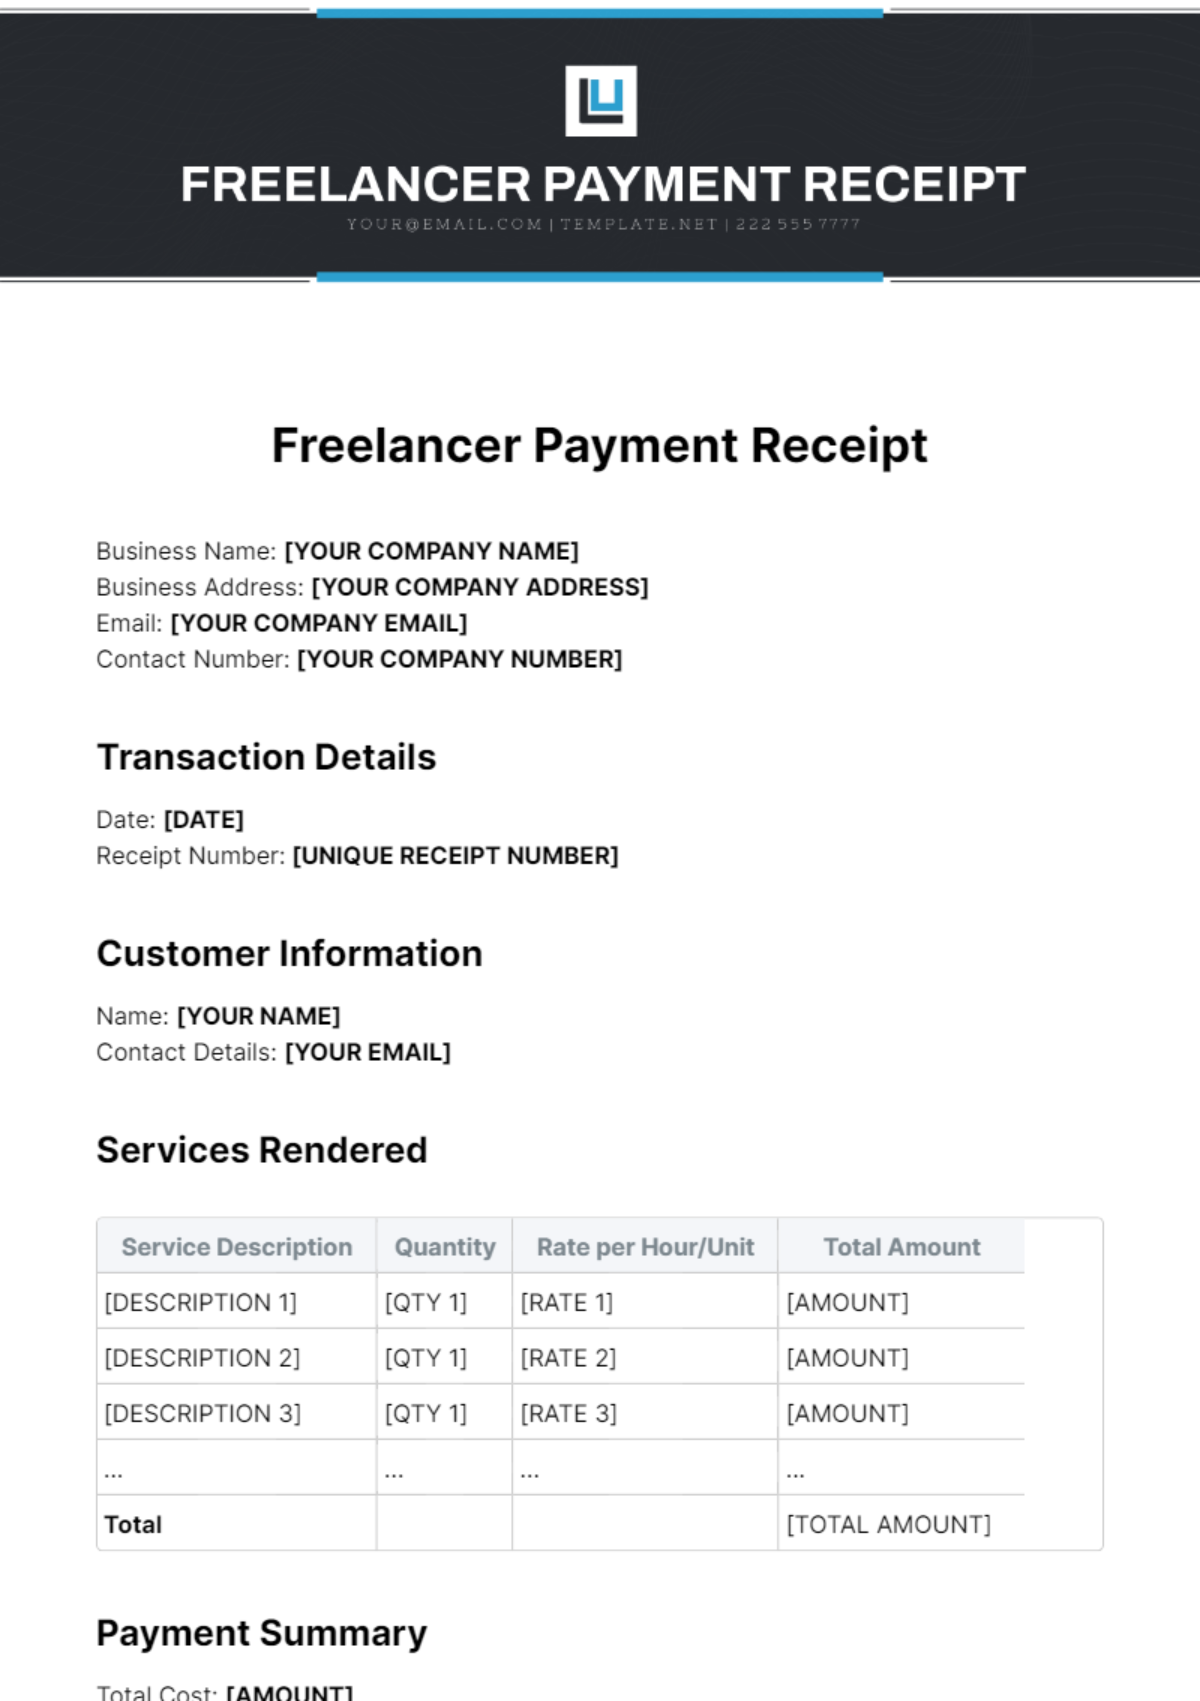 Freelancer Payment Receipt Template